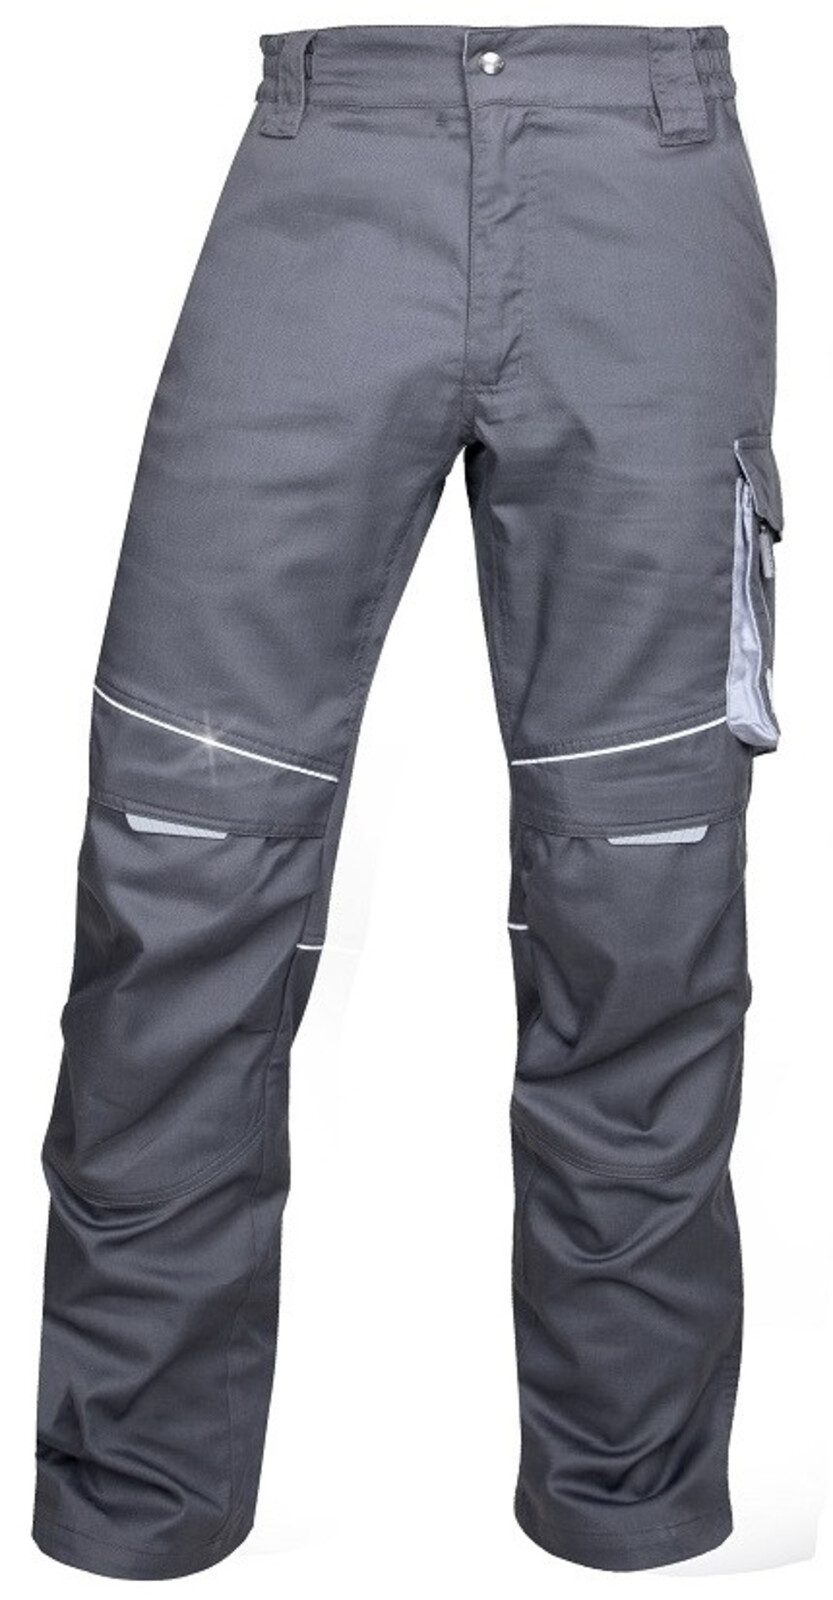 Pánske montérkové nohavice Ardon Summer - veľkosť: 58, farba: tmavo šedá